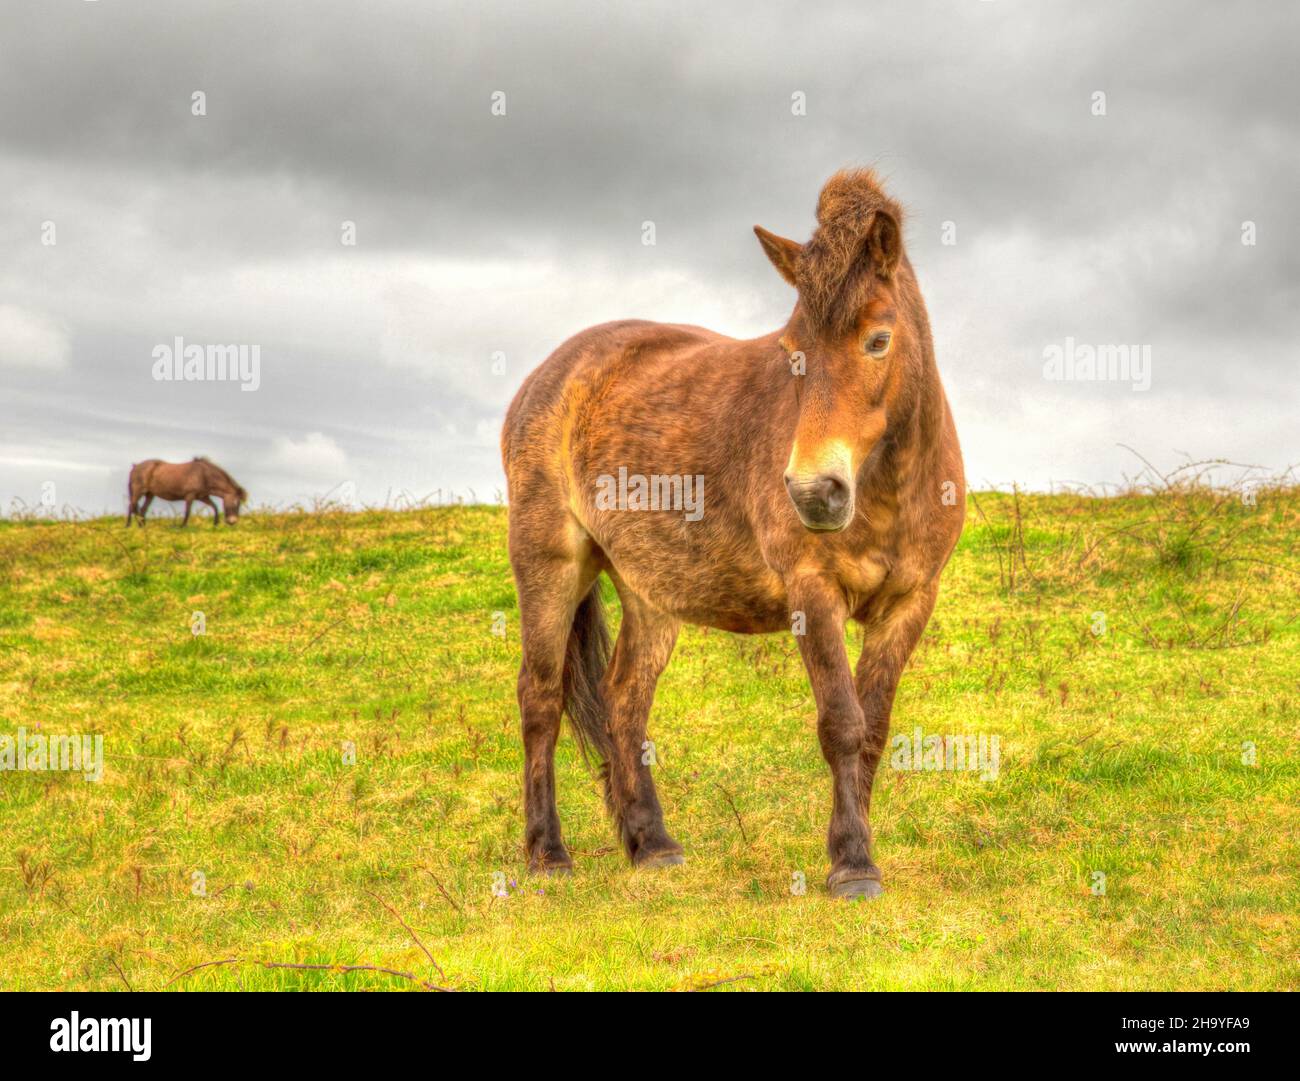 Wild Pony Quantock Hills Exmoor Somerset England UK free roaming Stock Photo